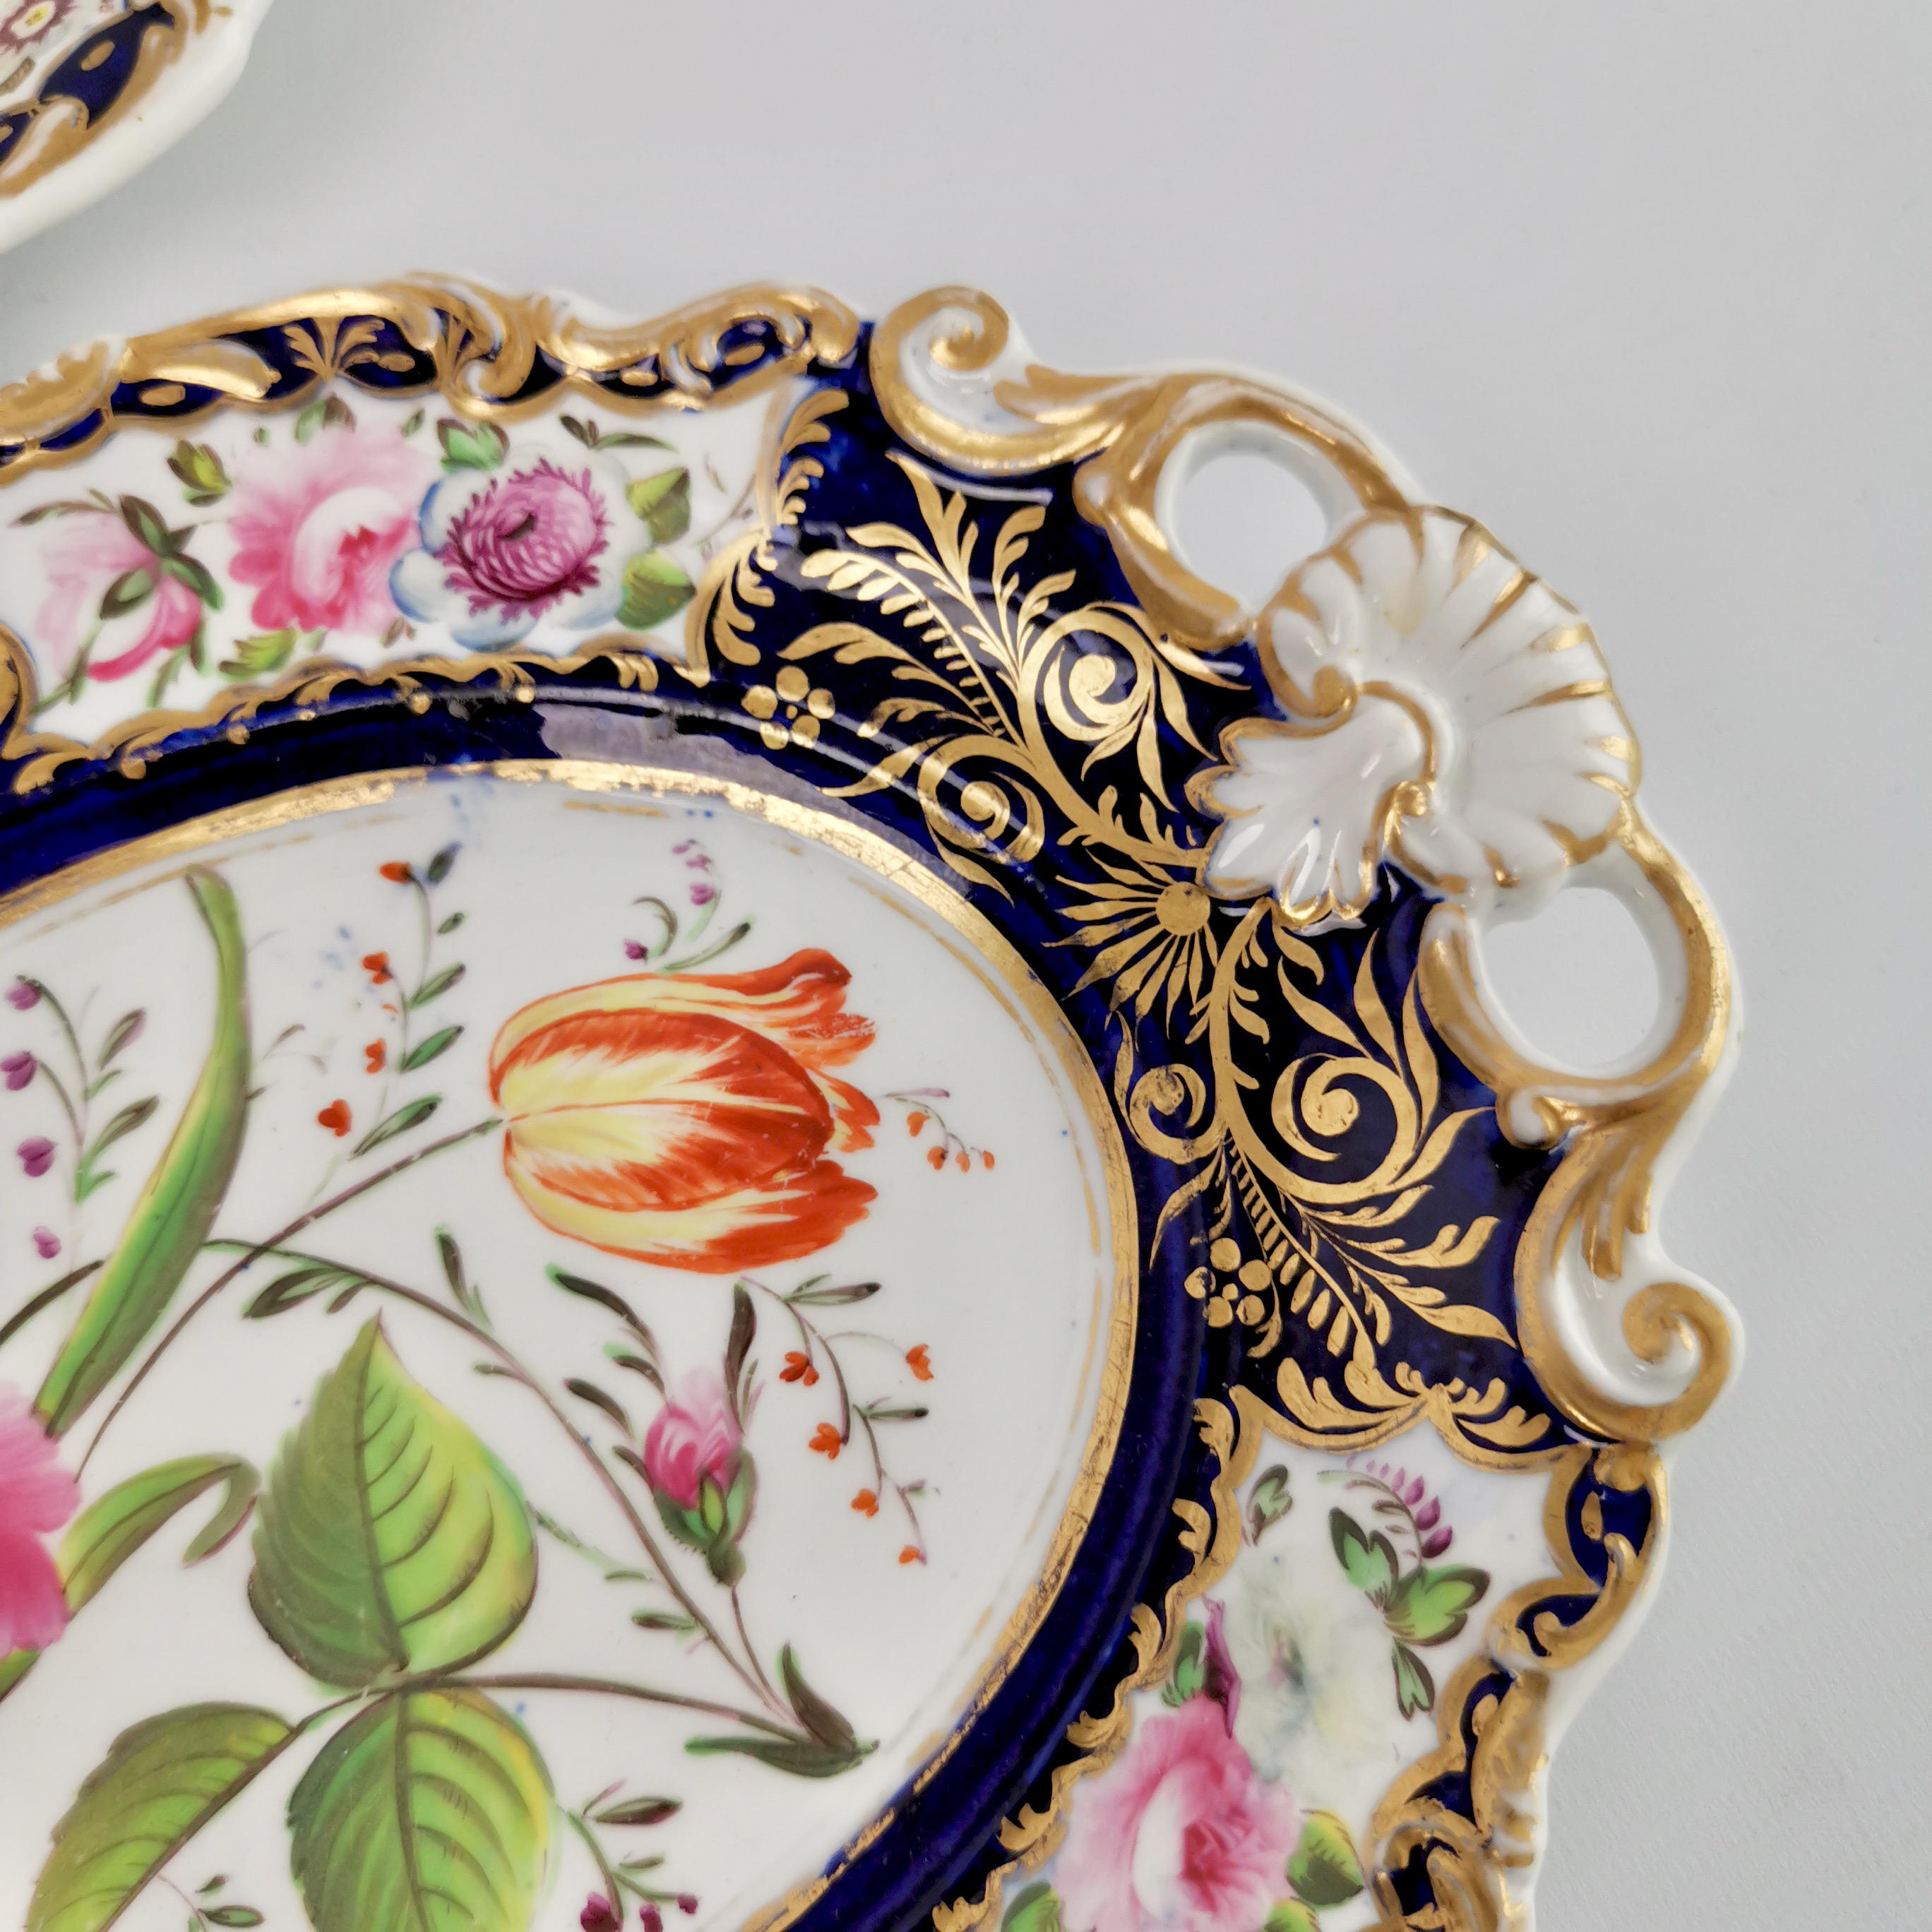 New Hall Porcelain Dessert Service, Cobalt Blue with Flowers, Regency 1824-1830 8